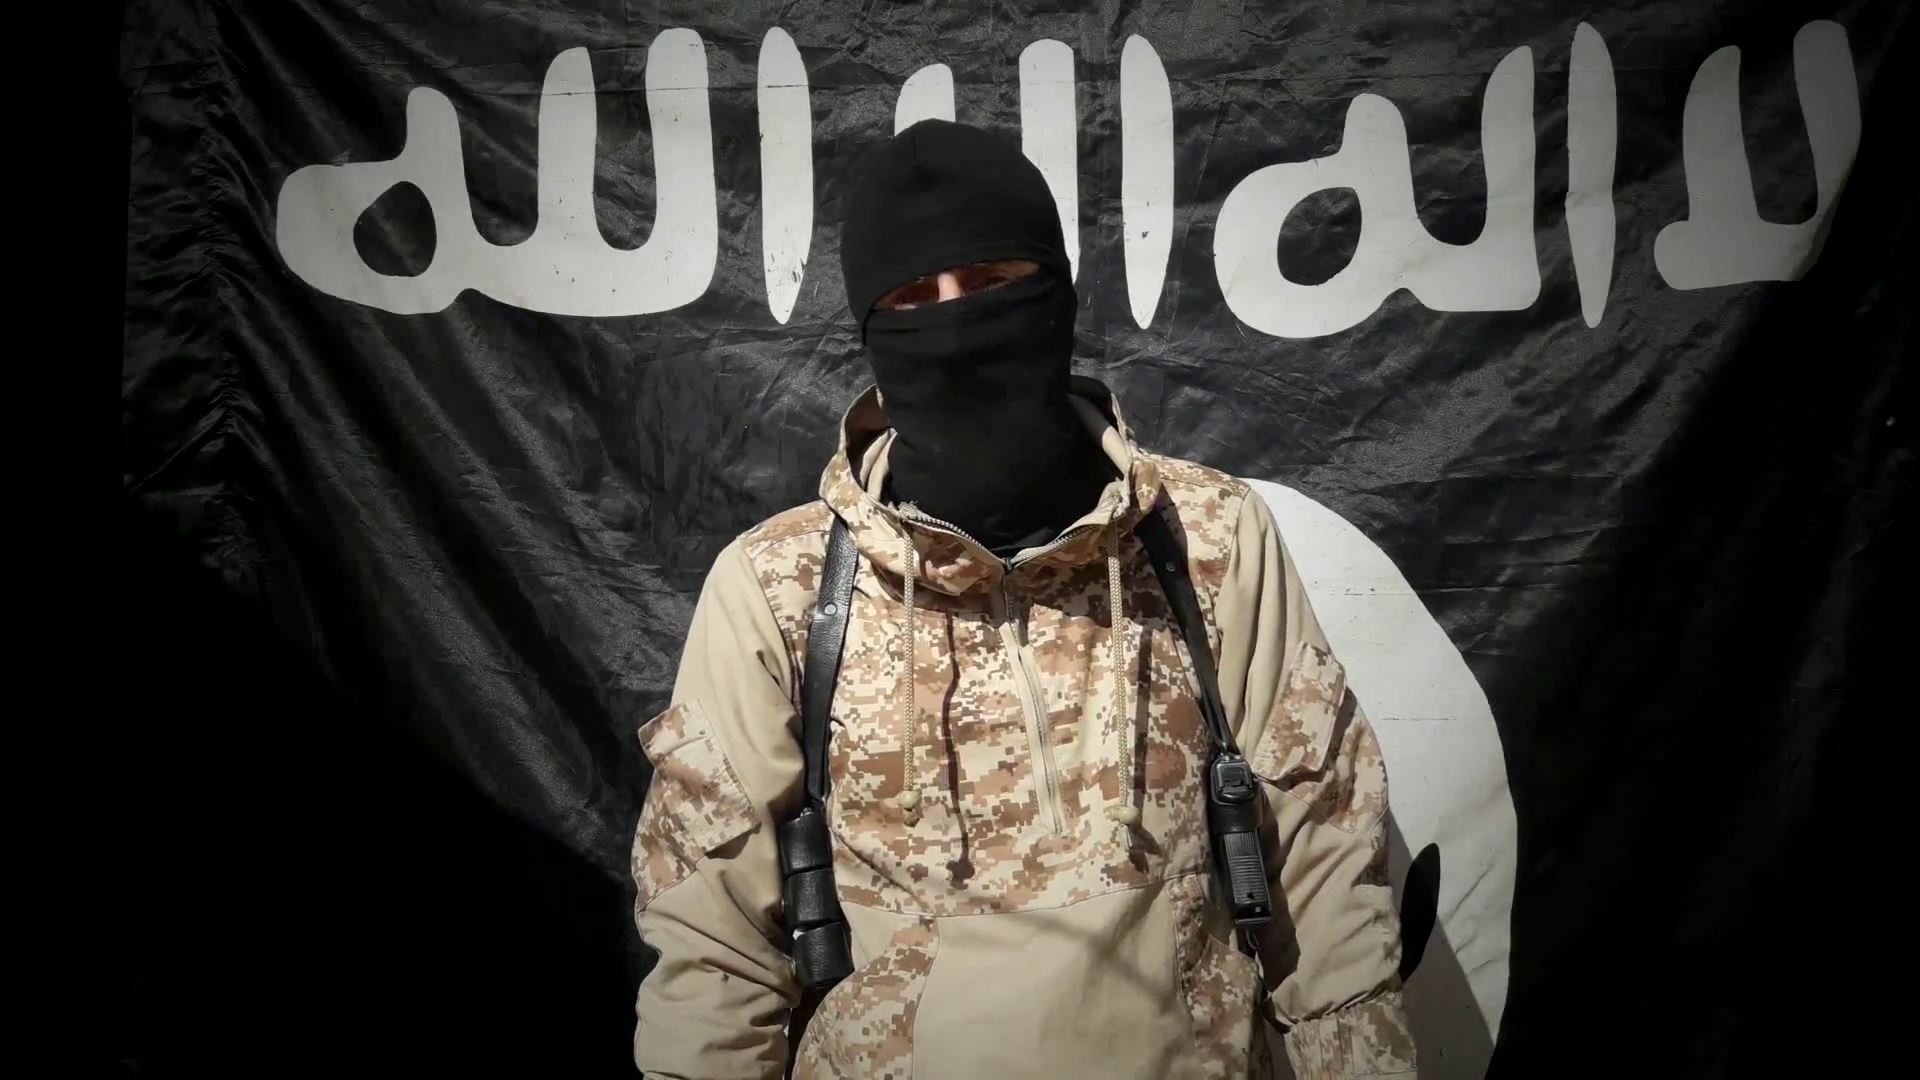 Террористы на фоне флага игил. Муджахиды Исламского государства. Одежда террористов. Флаг ИГИЛ.